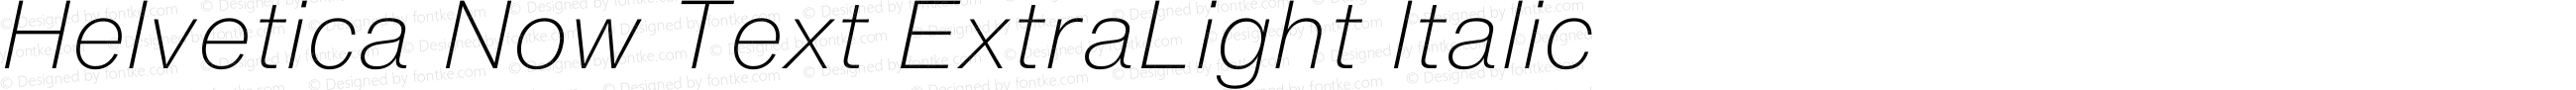 Helvetica Now Text ExtraLight Italic